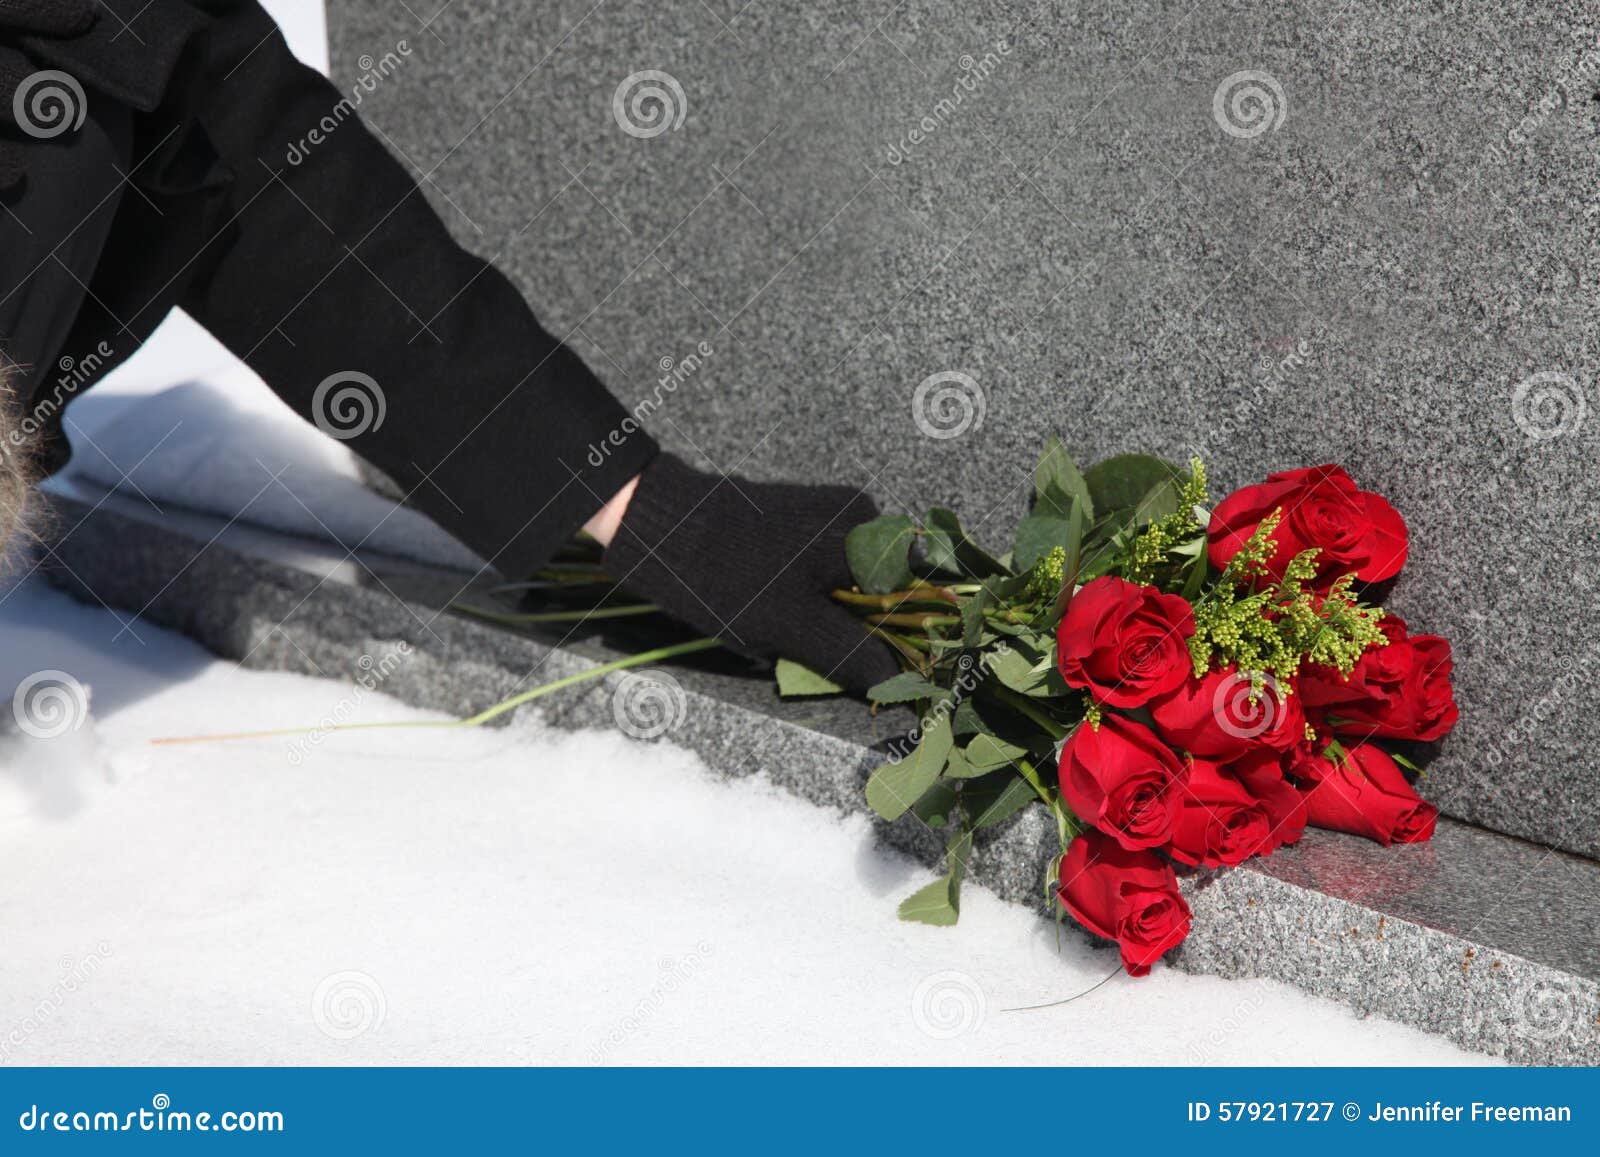 Можно на похороны мужчине. Кладет цветы на могилу. Букет роз на могилу. Люди с цветами на кладбище. Букет роз на кладбище.